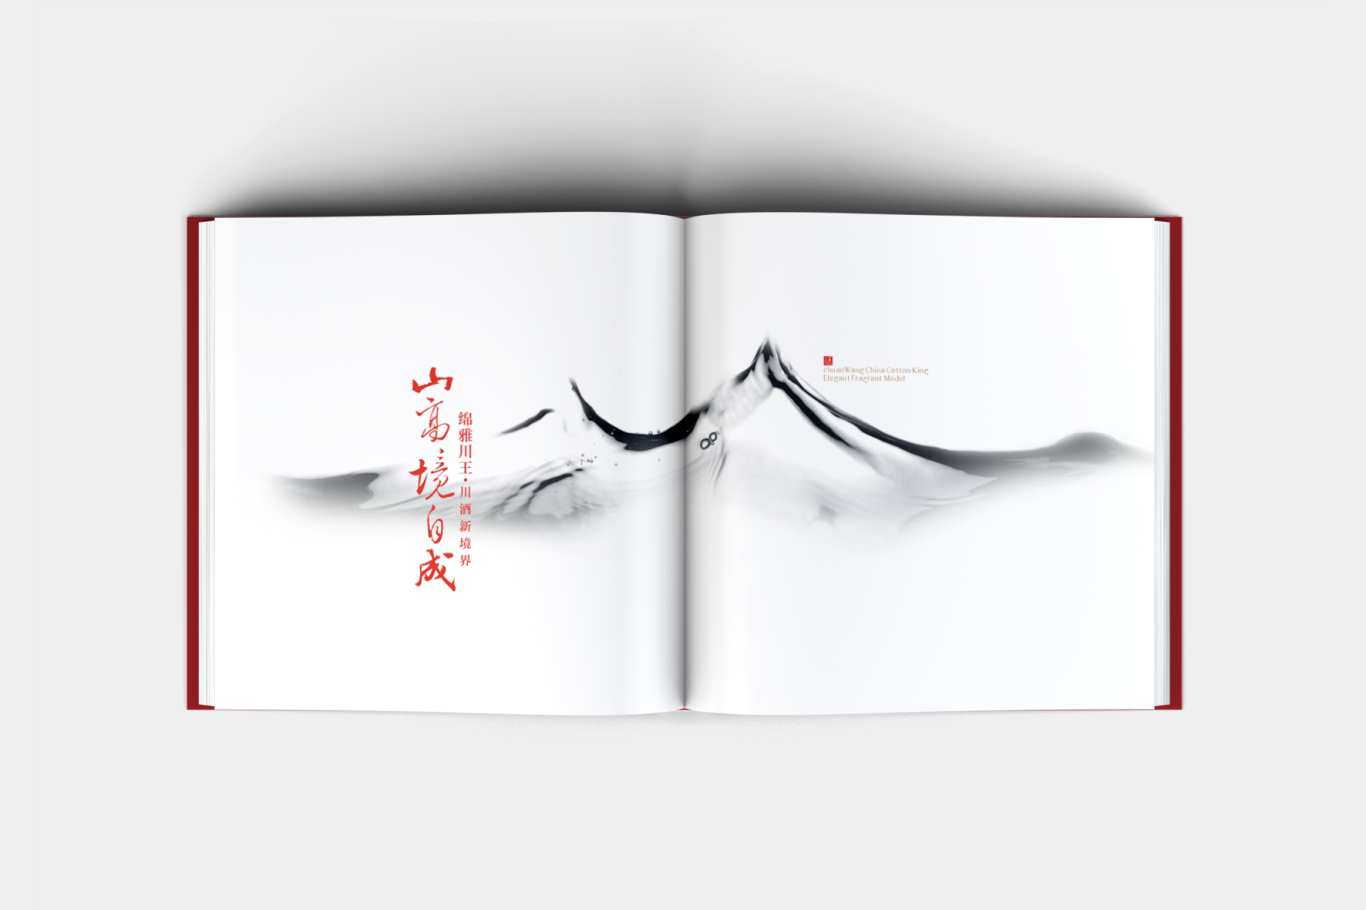 川王品牌形象升级设计图13